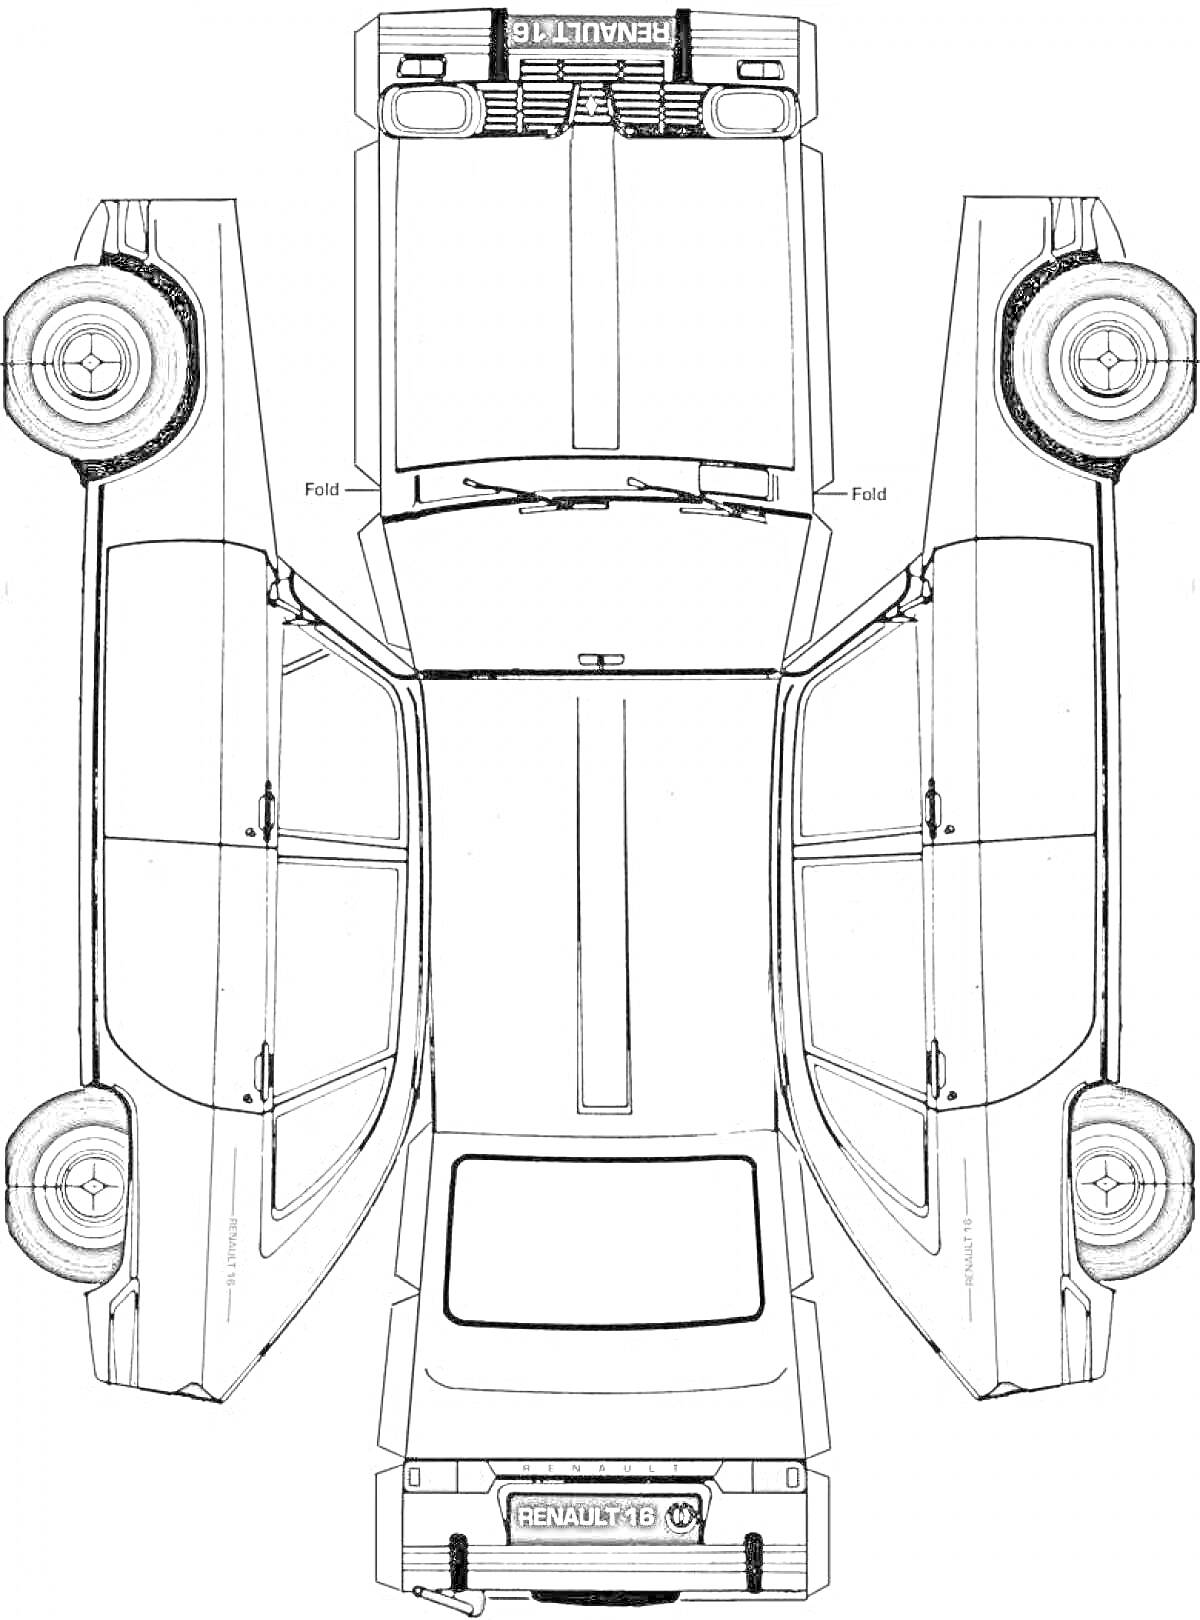 Раскраска Раскраска - схема сборки из бумаги автомобиля Renault 16 с видимыми верхней, передней, задней и боковыми частями, включая колёса, двери, окна и фары.